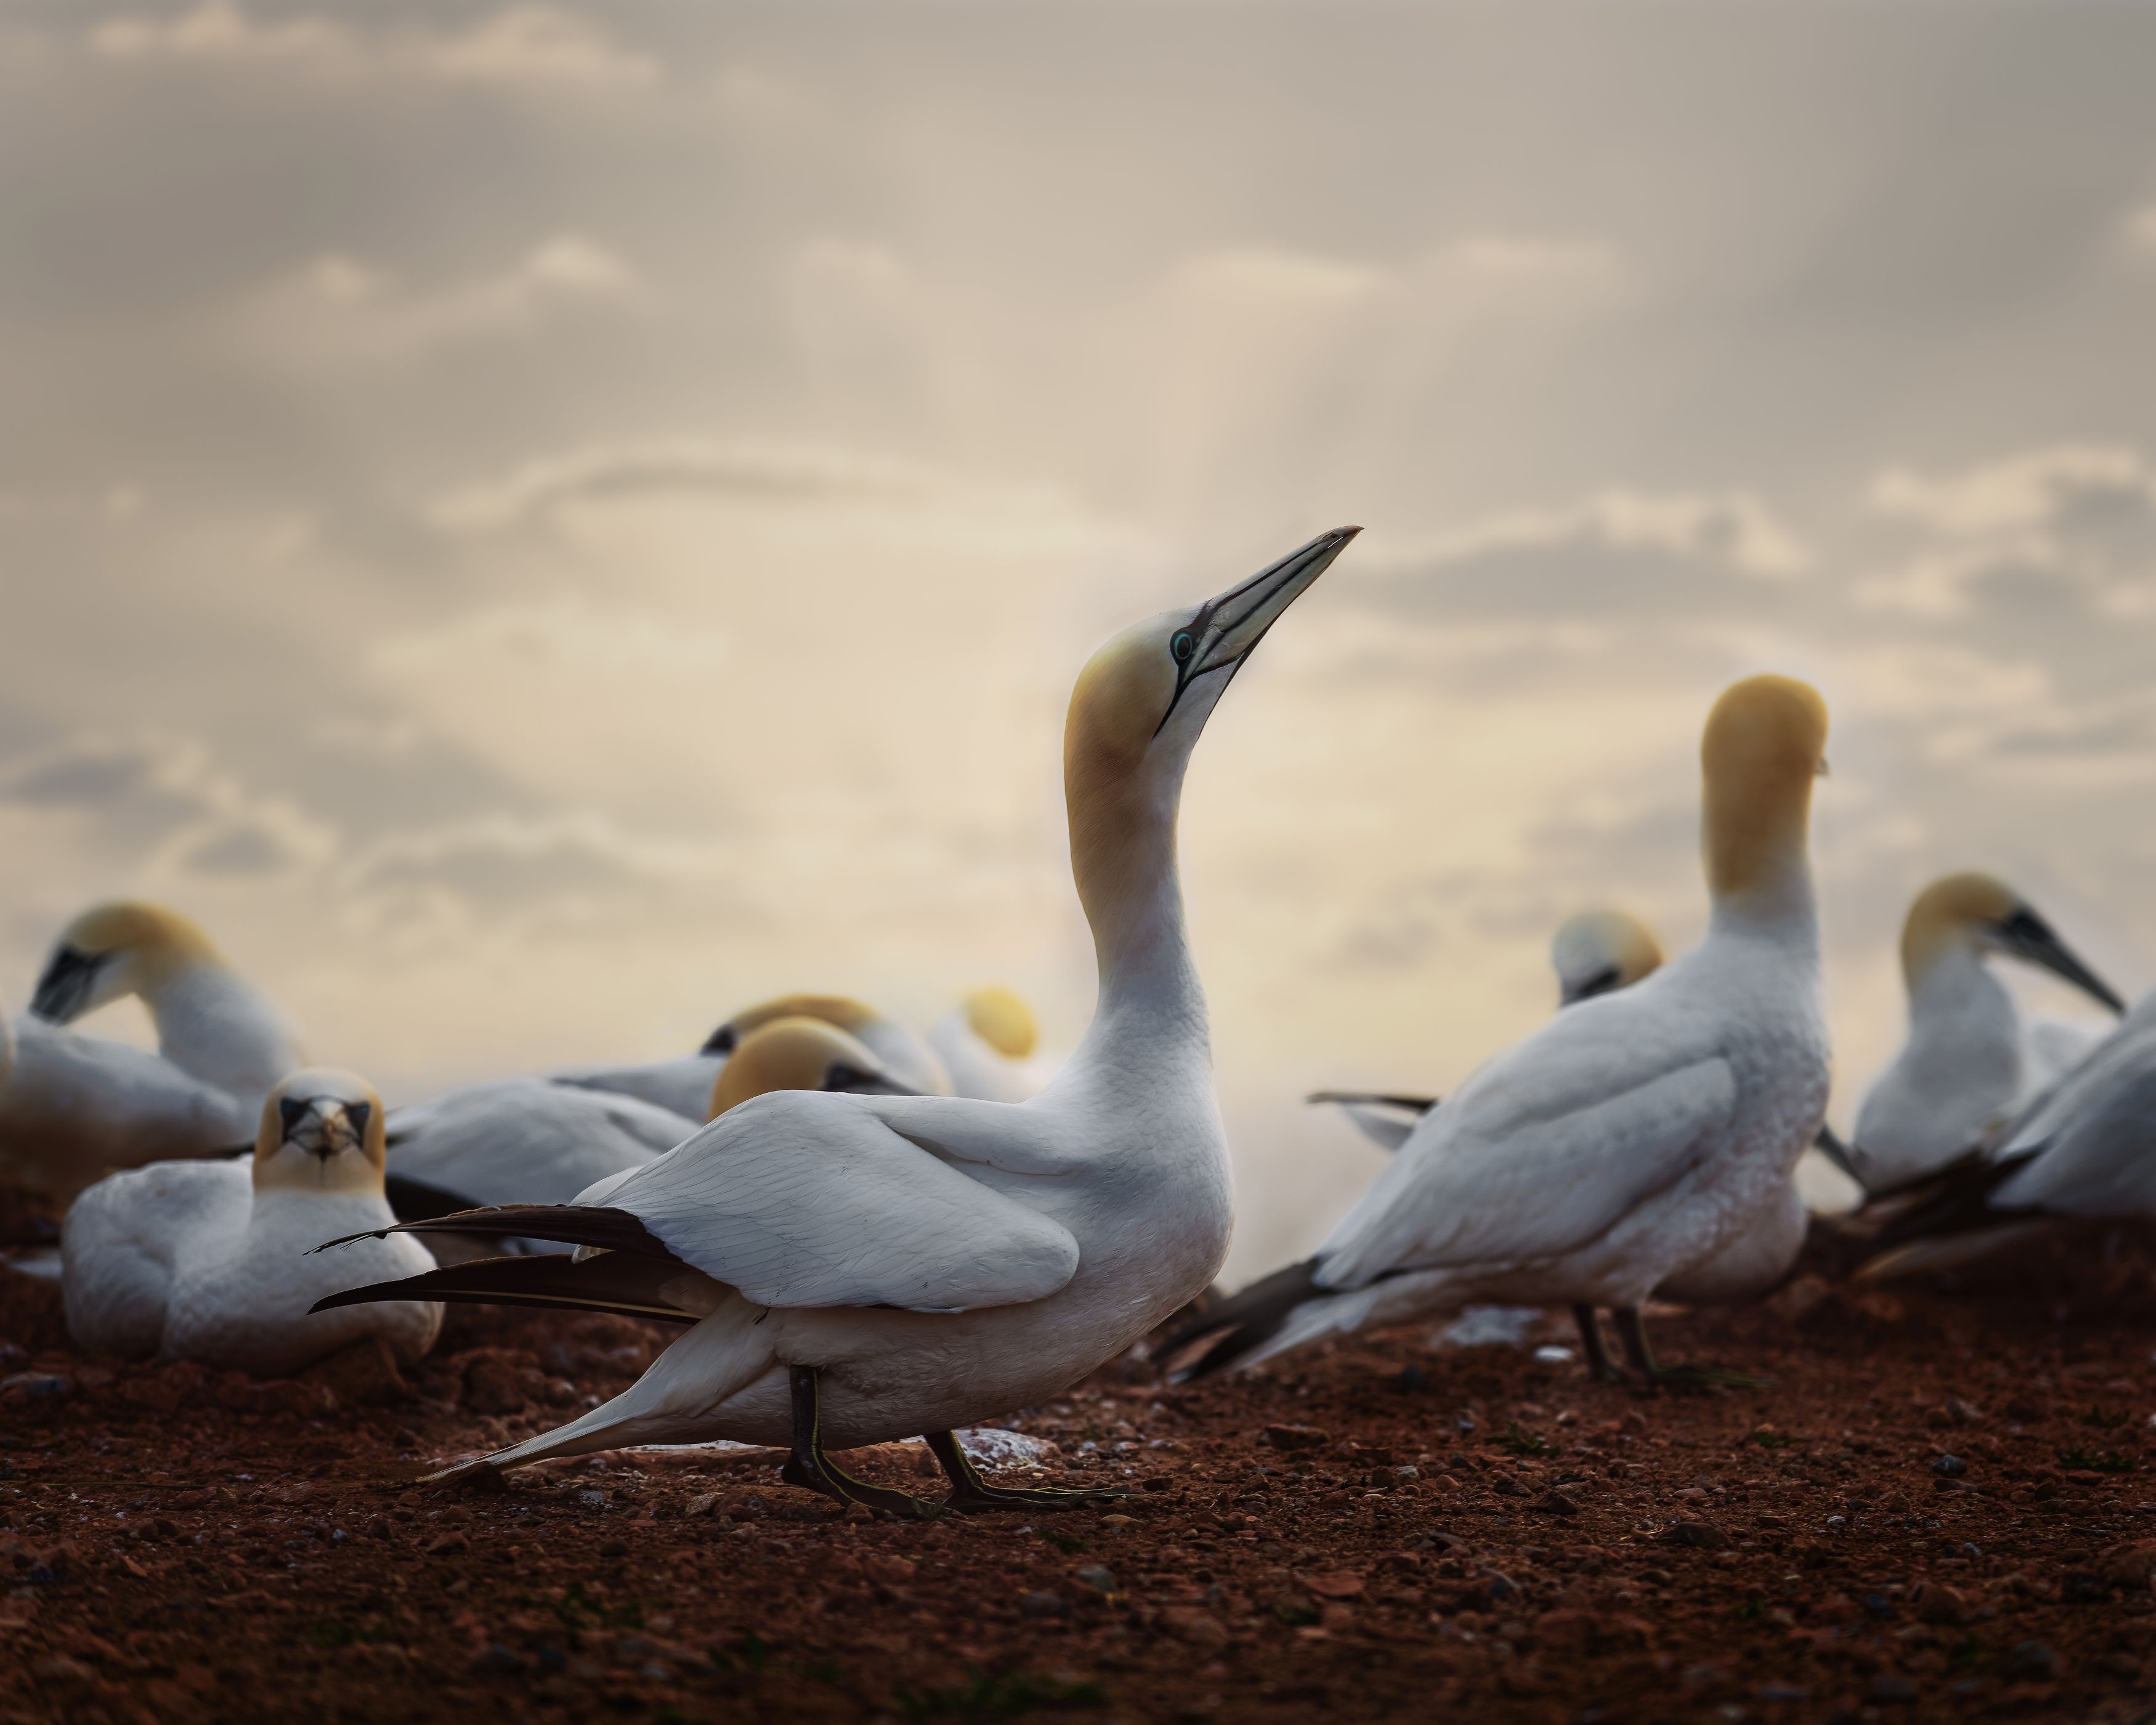 gannet, seabird, birds, sunset, Michaela Firešová